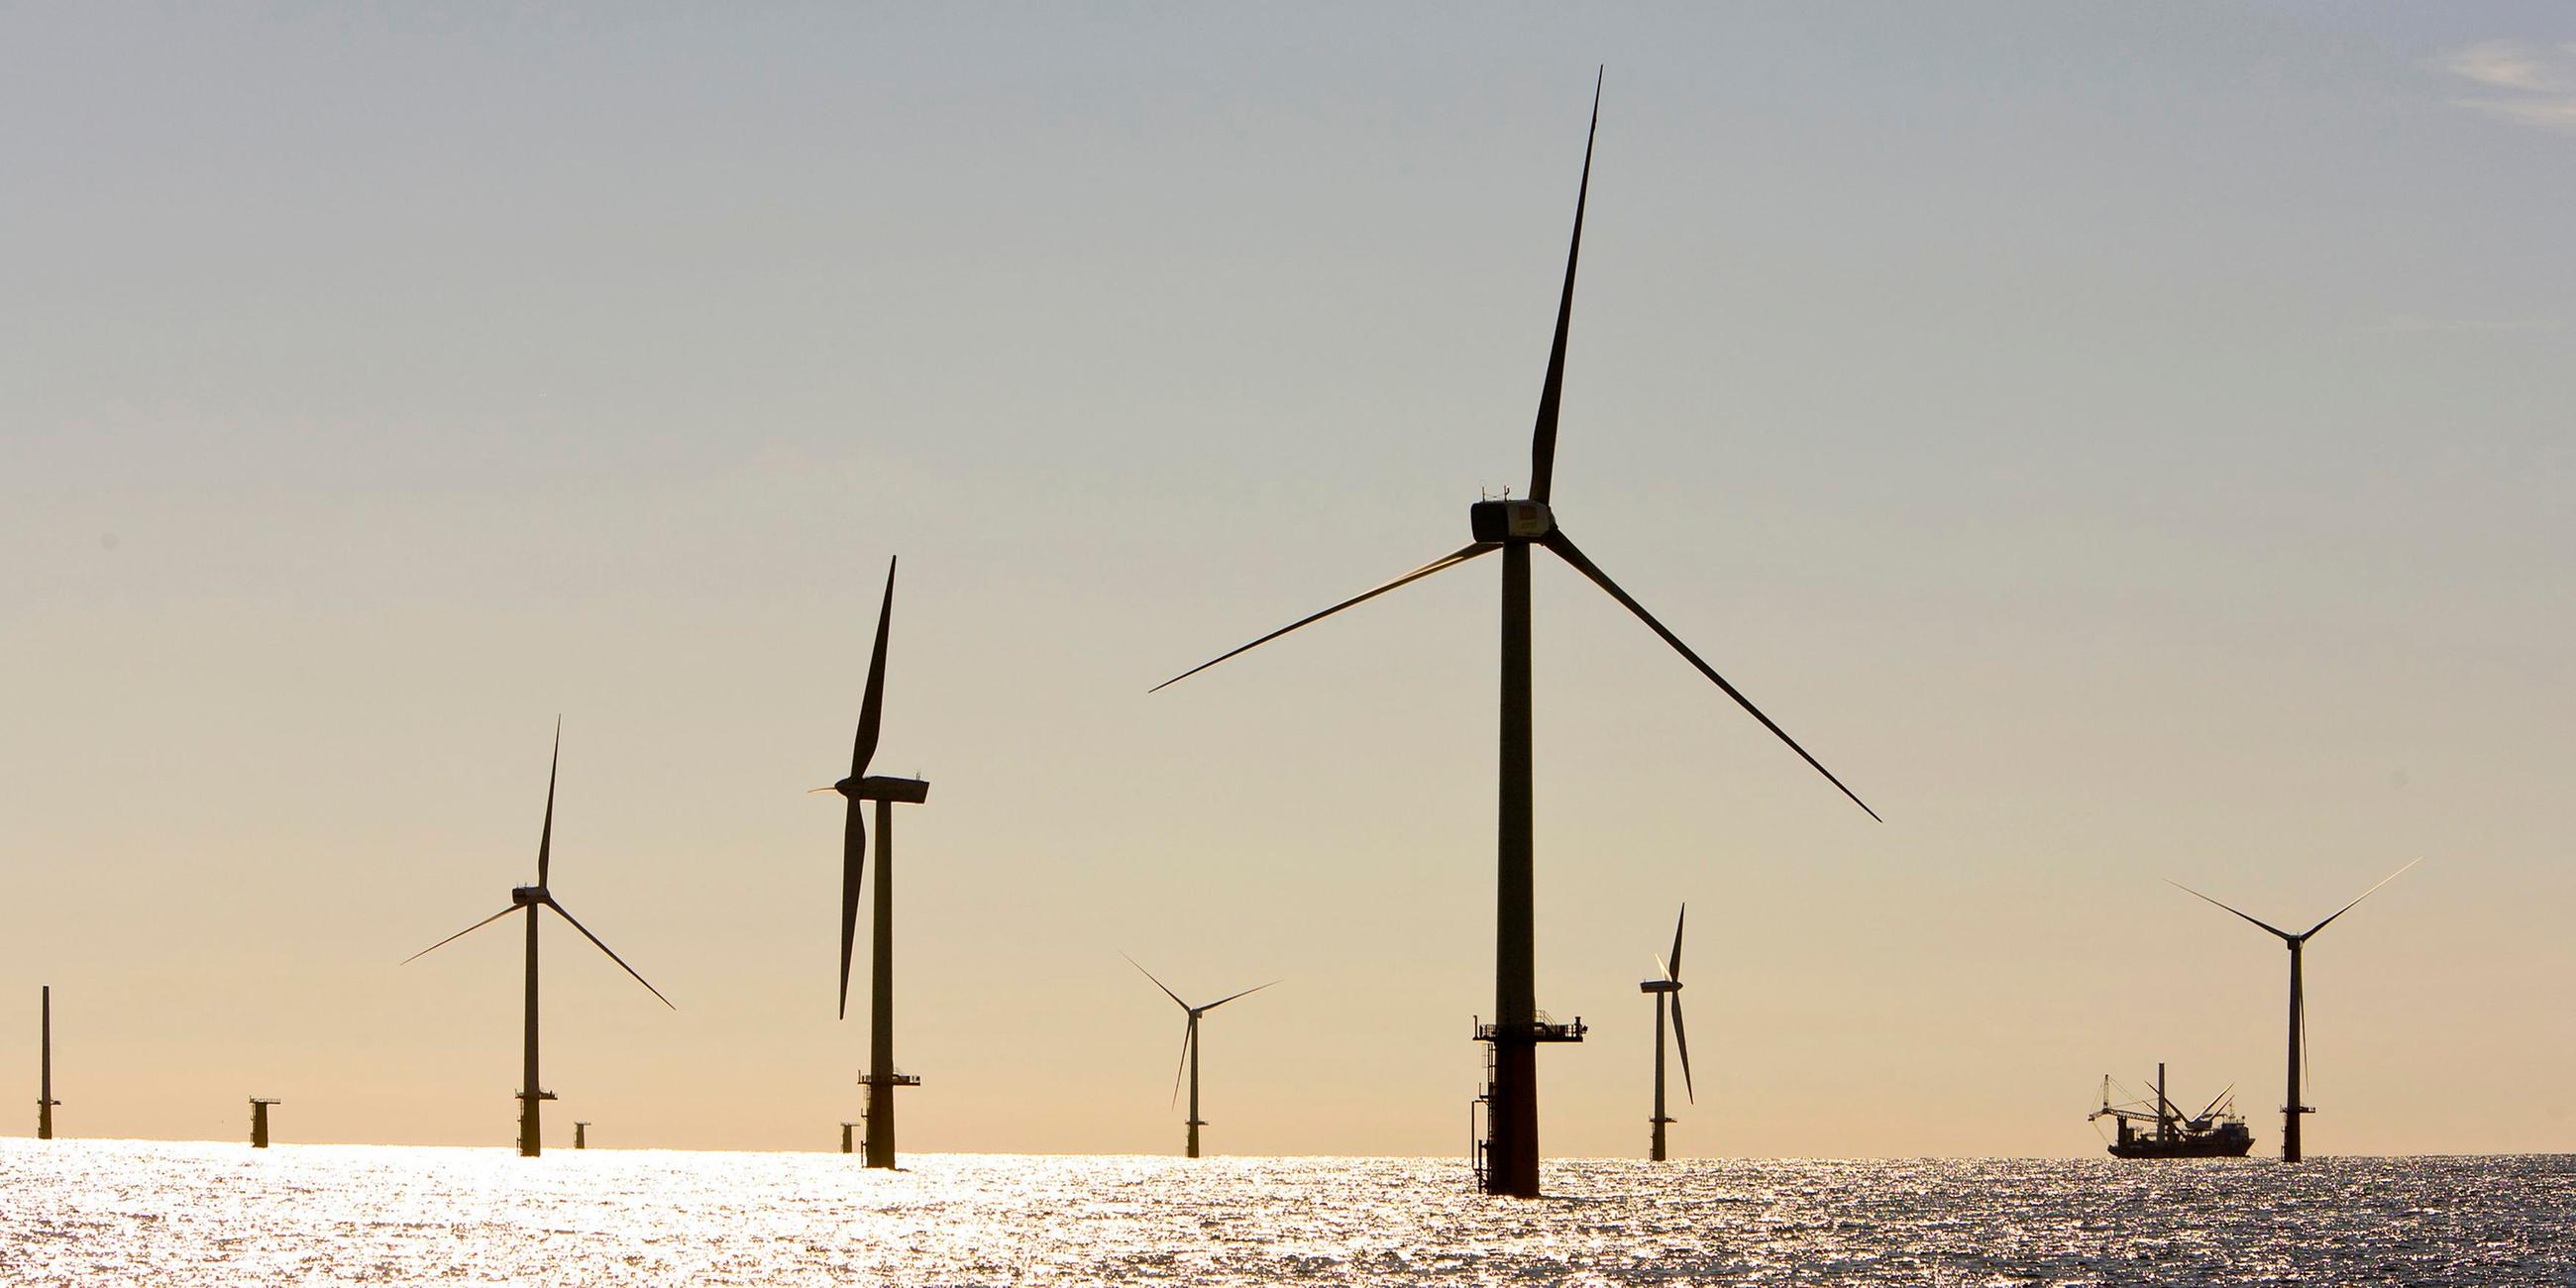 Zahlreiche Windmühlen eines Offshore-Windparks im Meer.